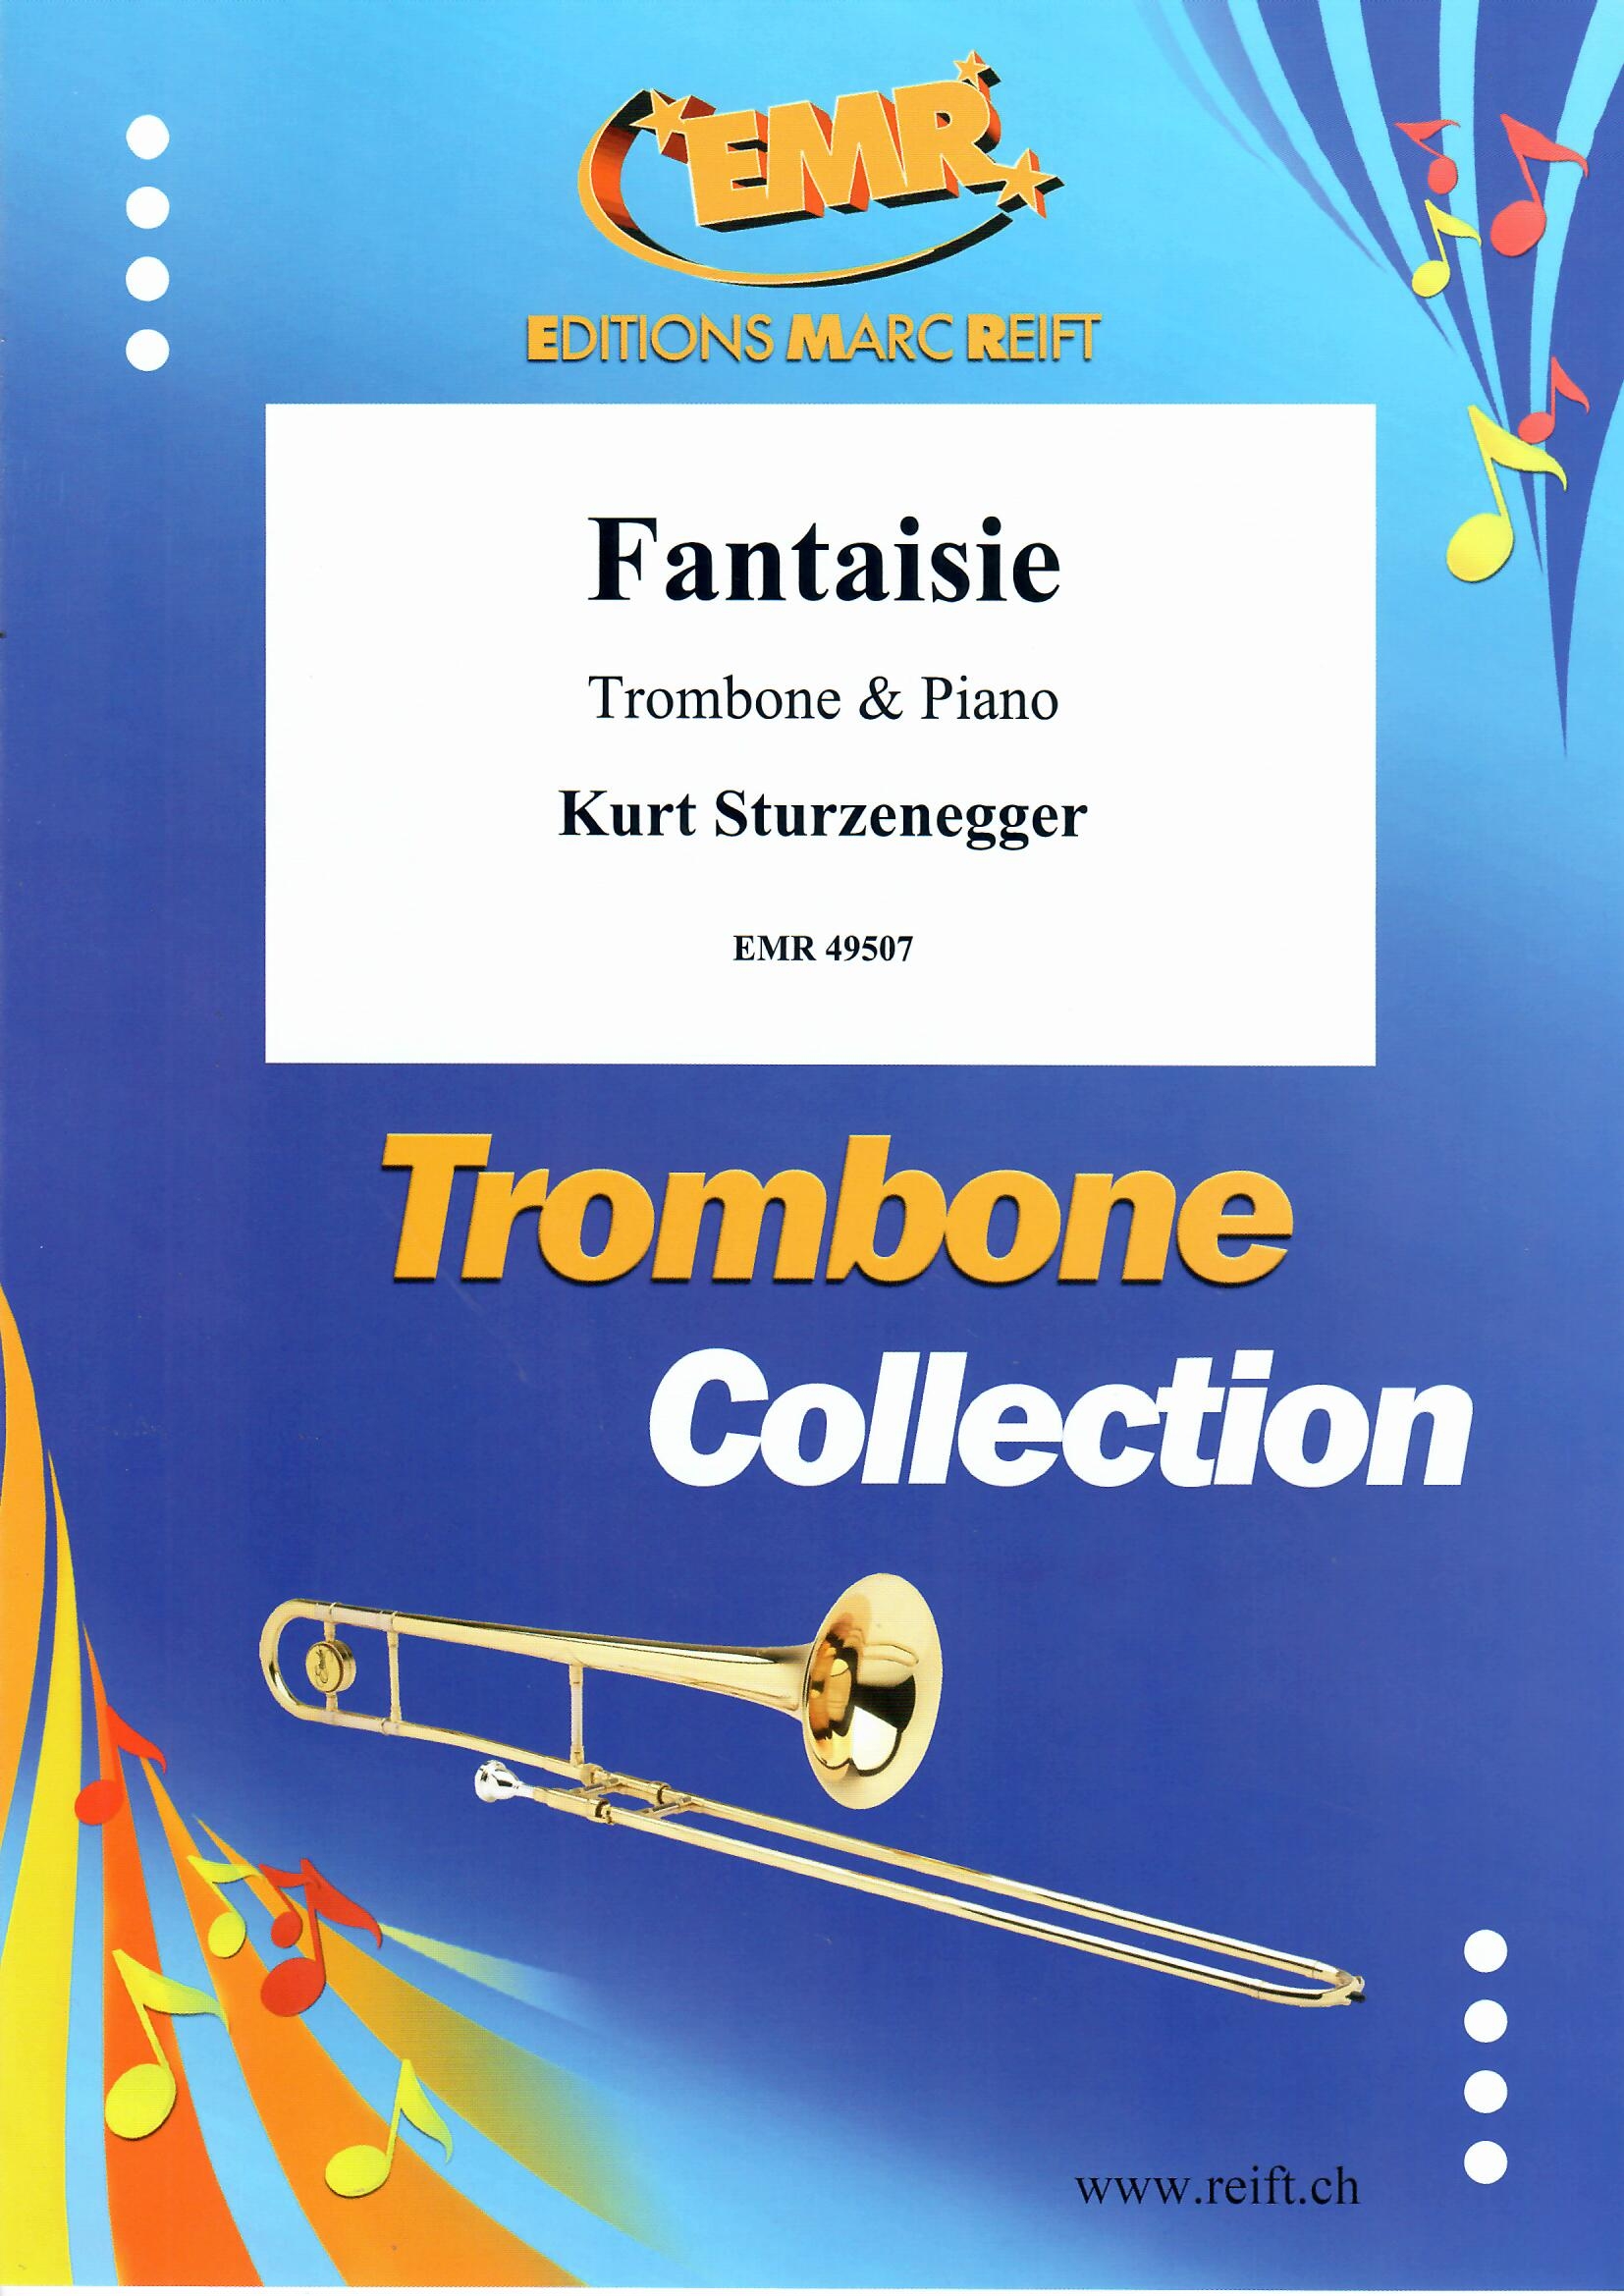 FANTAISIE - Trombone & Piano